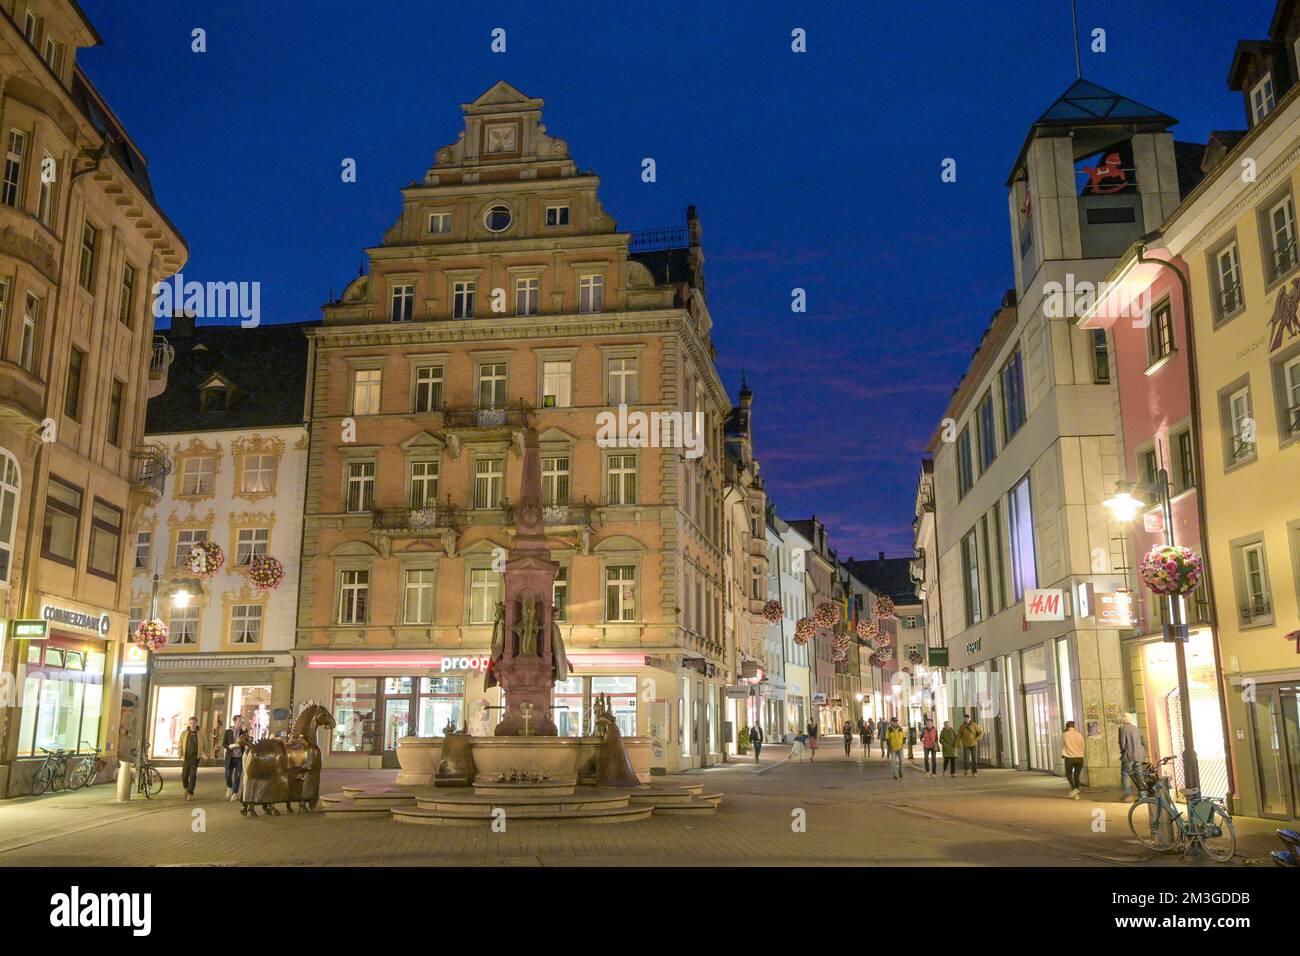 Einkaufsstraße, Fußgängerzone, Marktplatz, Altstadt, Constance, Baden-Württemberg, Deutschland Stockfoto